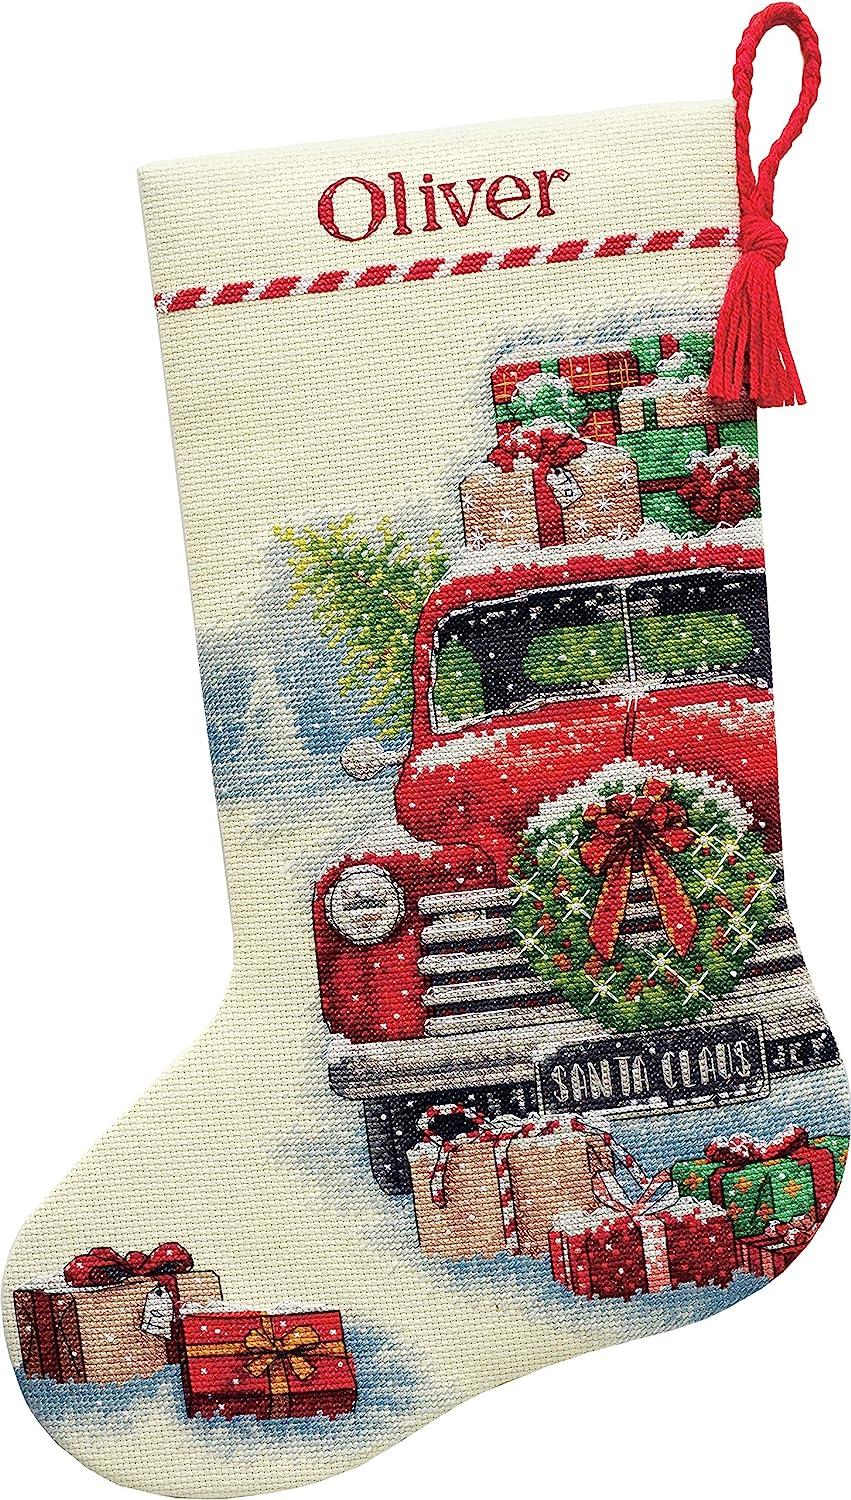 Hobbii - Time for Christmas stockings ❤️💚 With Christmas